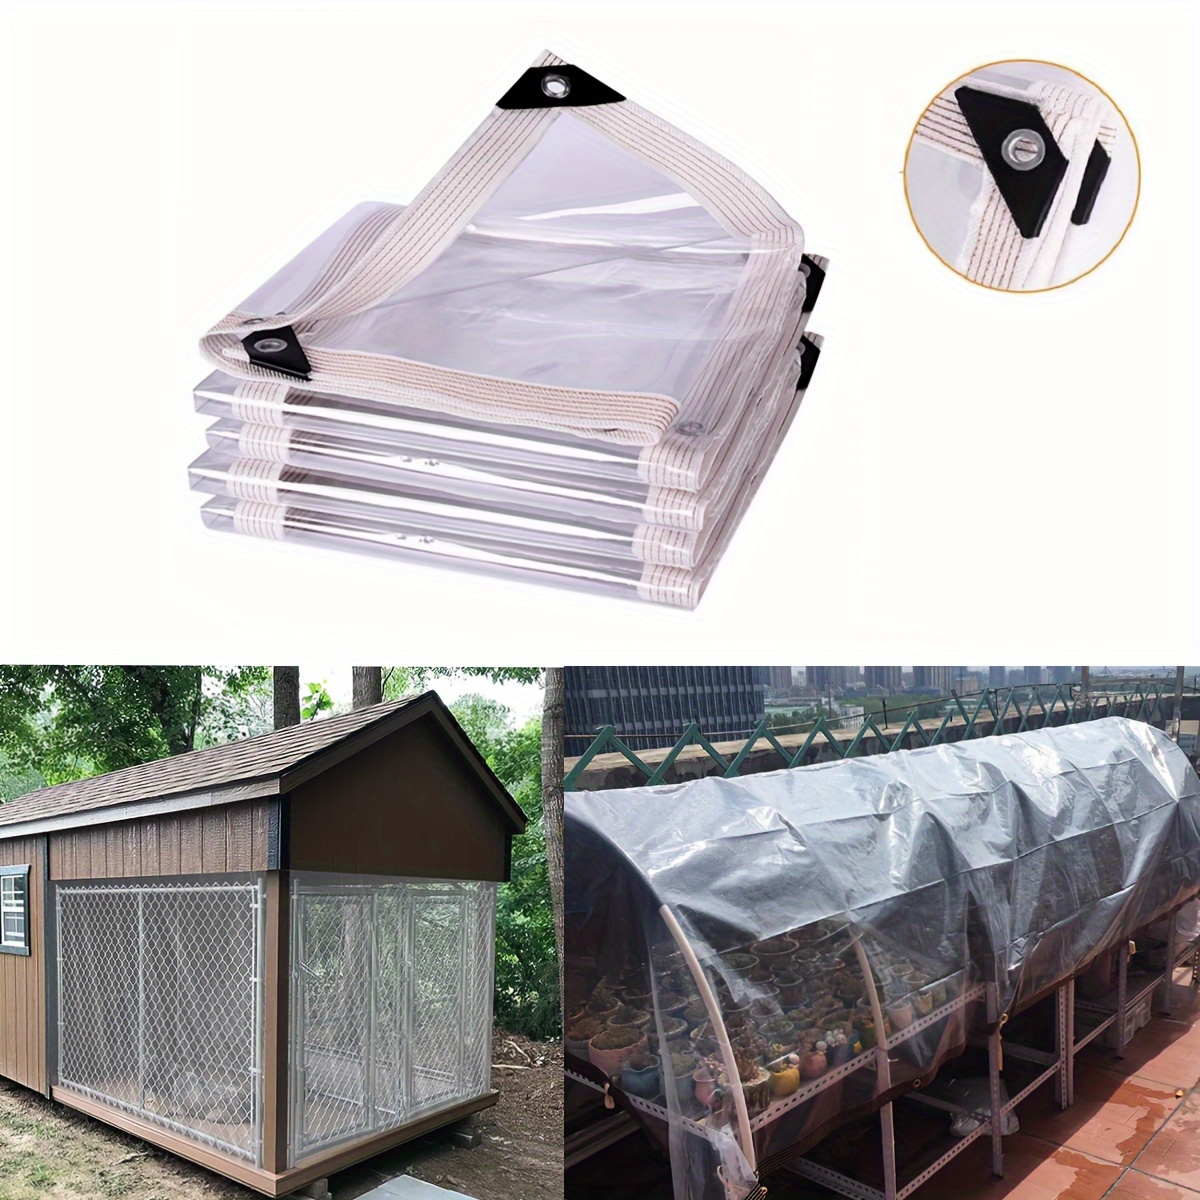 Lona de PVC resistente con ojales, lona transparente, lona transparente,  cubierta de lona transparente impermeable para recinto de patio, camping